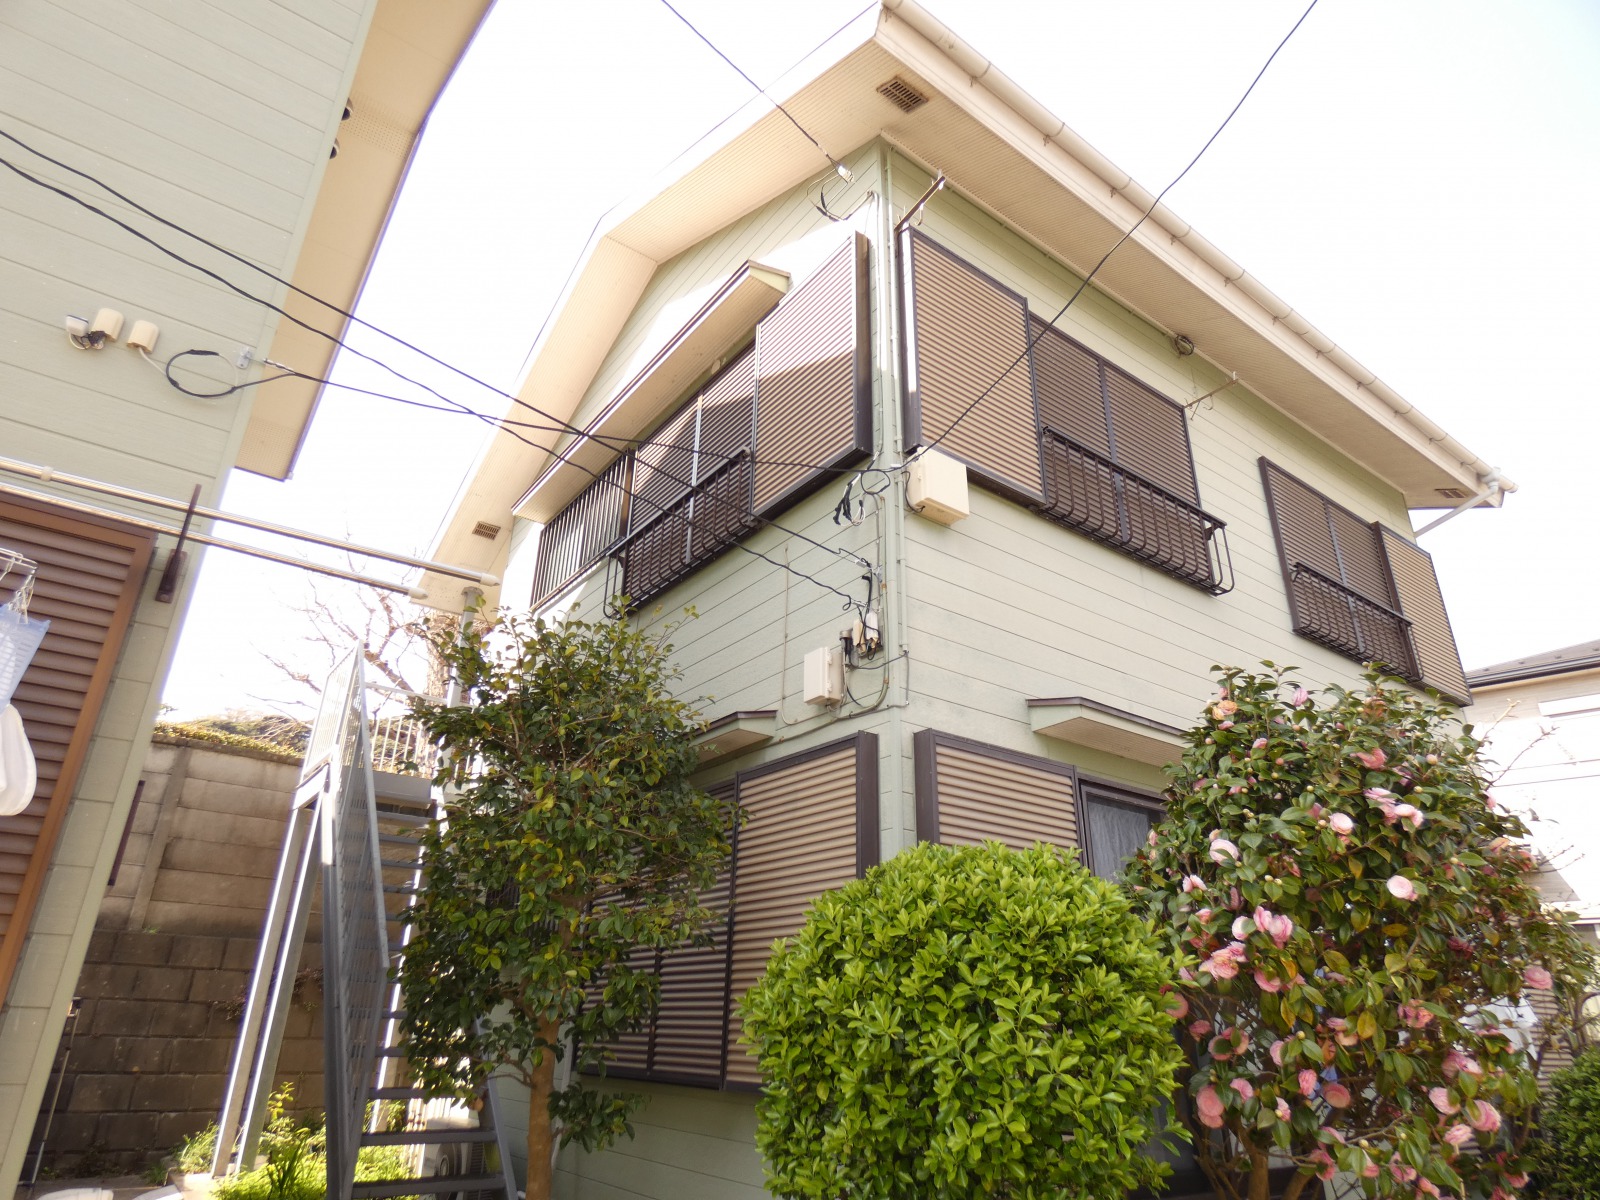 鎌倉有数の観光スポット・長谷観音の参道から少し入ったところにある、２階建てアパートの２階部分となります。